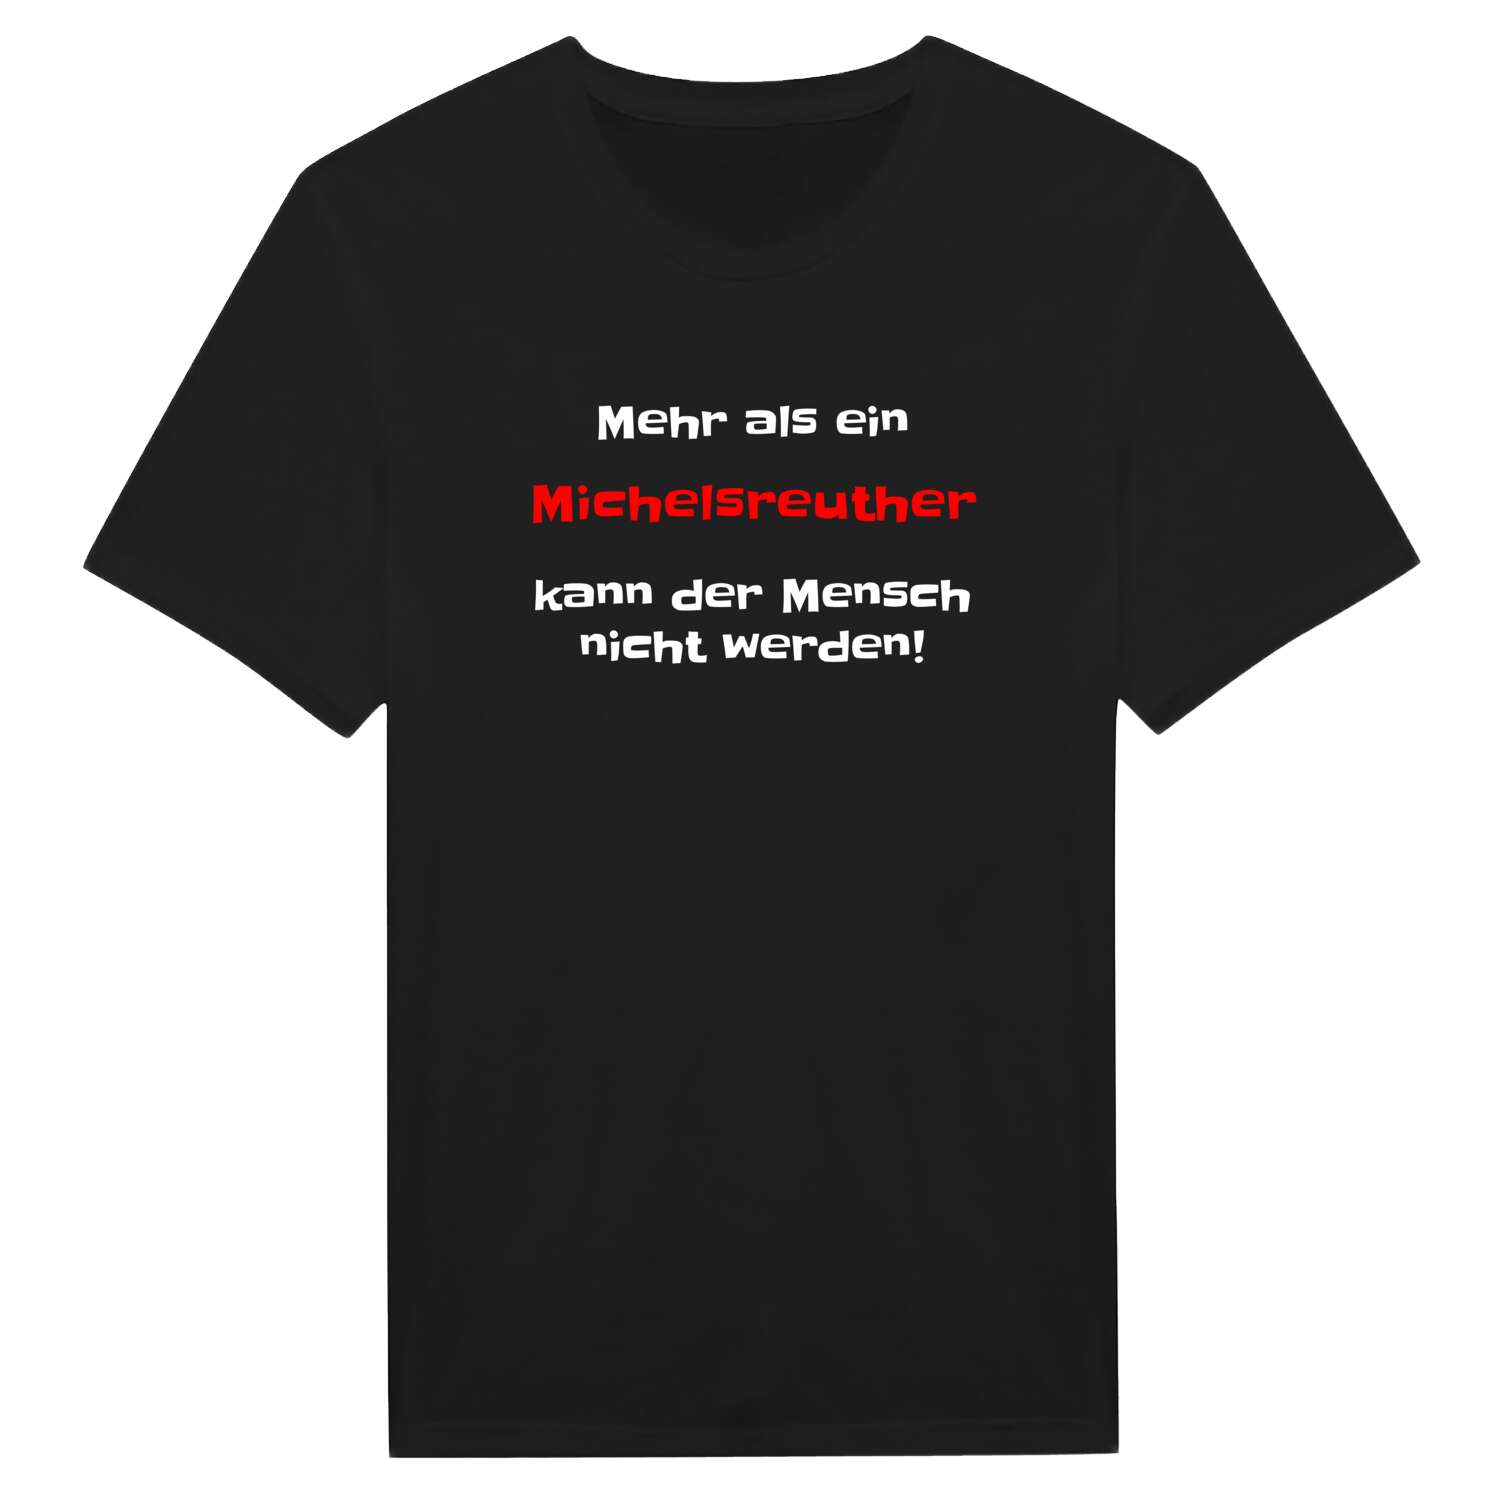 Michelsreuth T-Shirt »Mehr als ein«